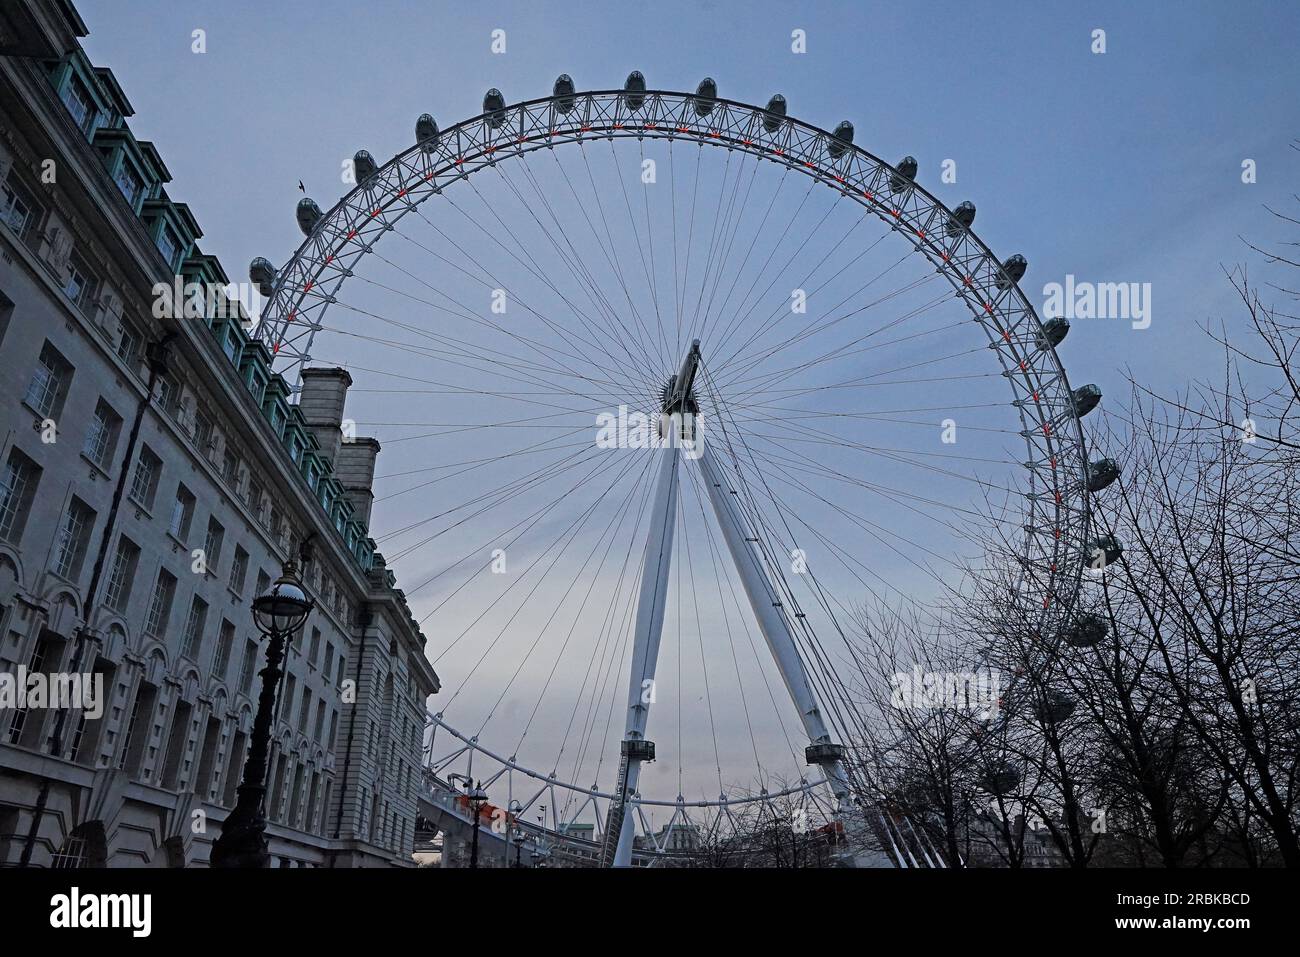 Äußere europäische Architektur und Design des London Eye Riesenrads, Europas höchstes freitragendes Aussichtsrad an der Themse - Vereinigtes Königreich Stockfoto